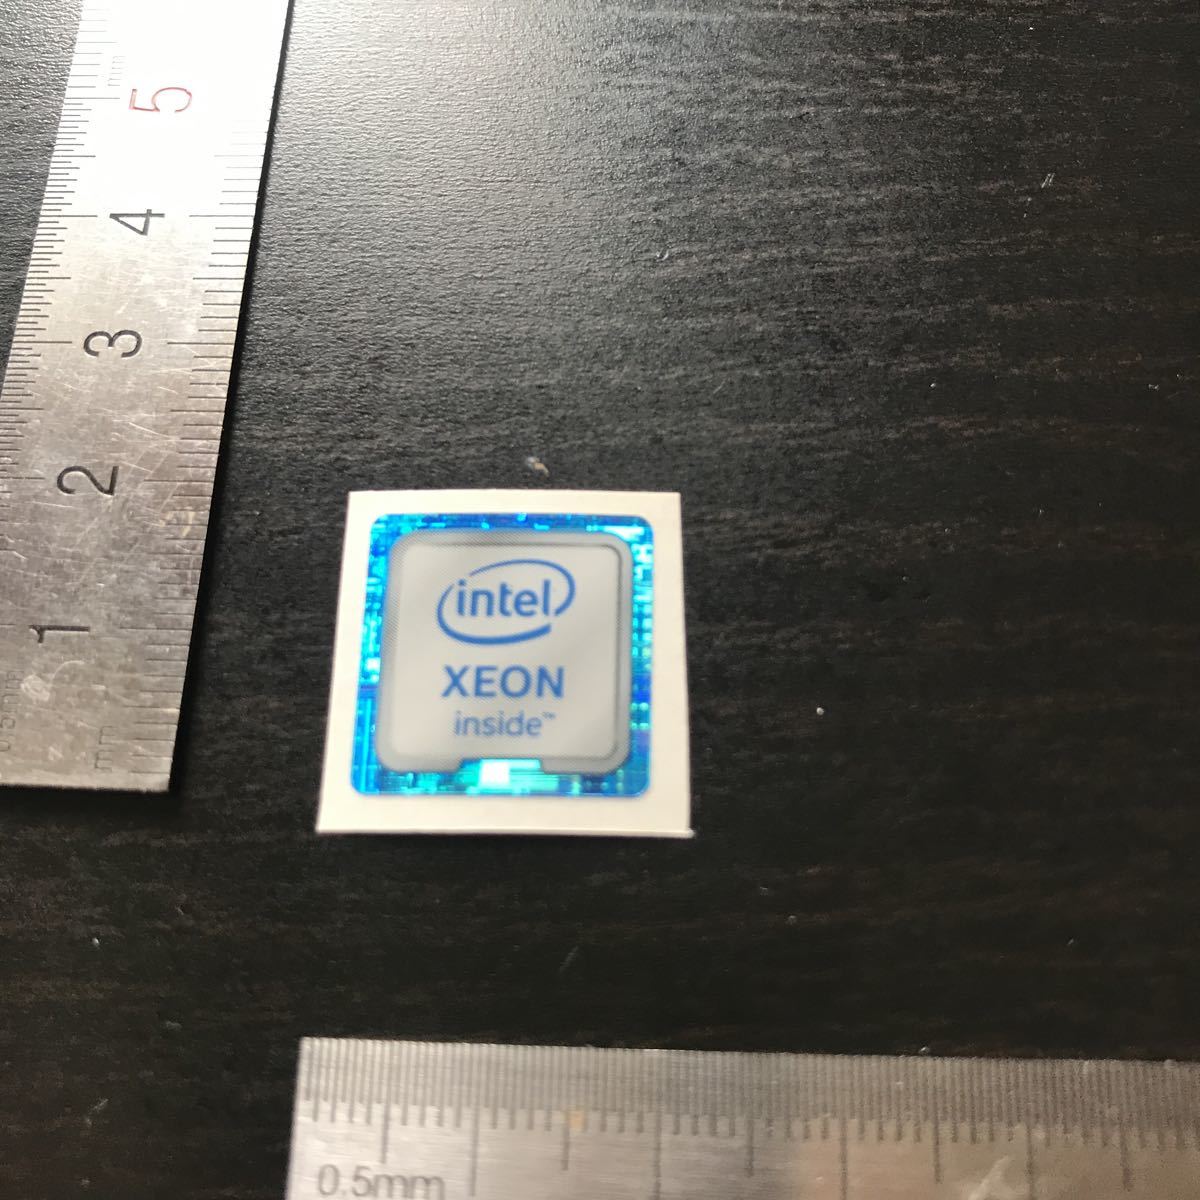 Intel XRON inside персональный компьютер  эмблема  наклейка @1862